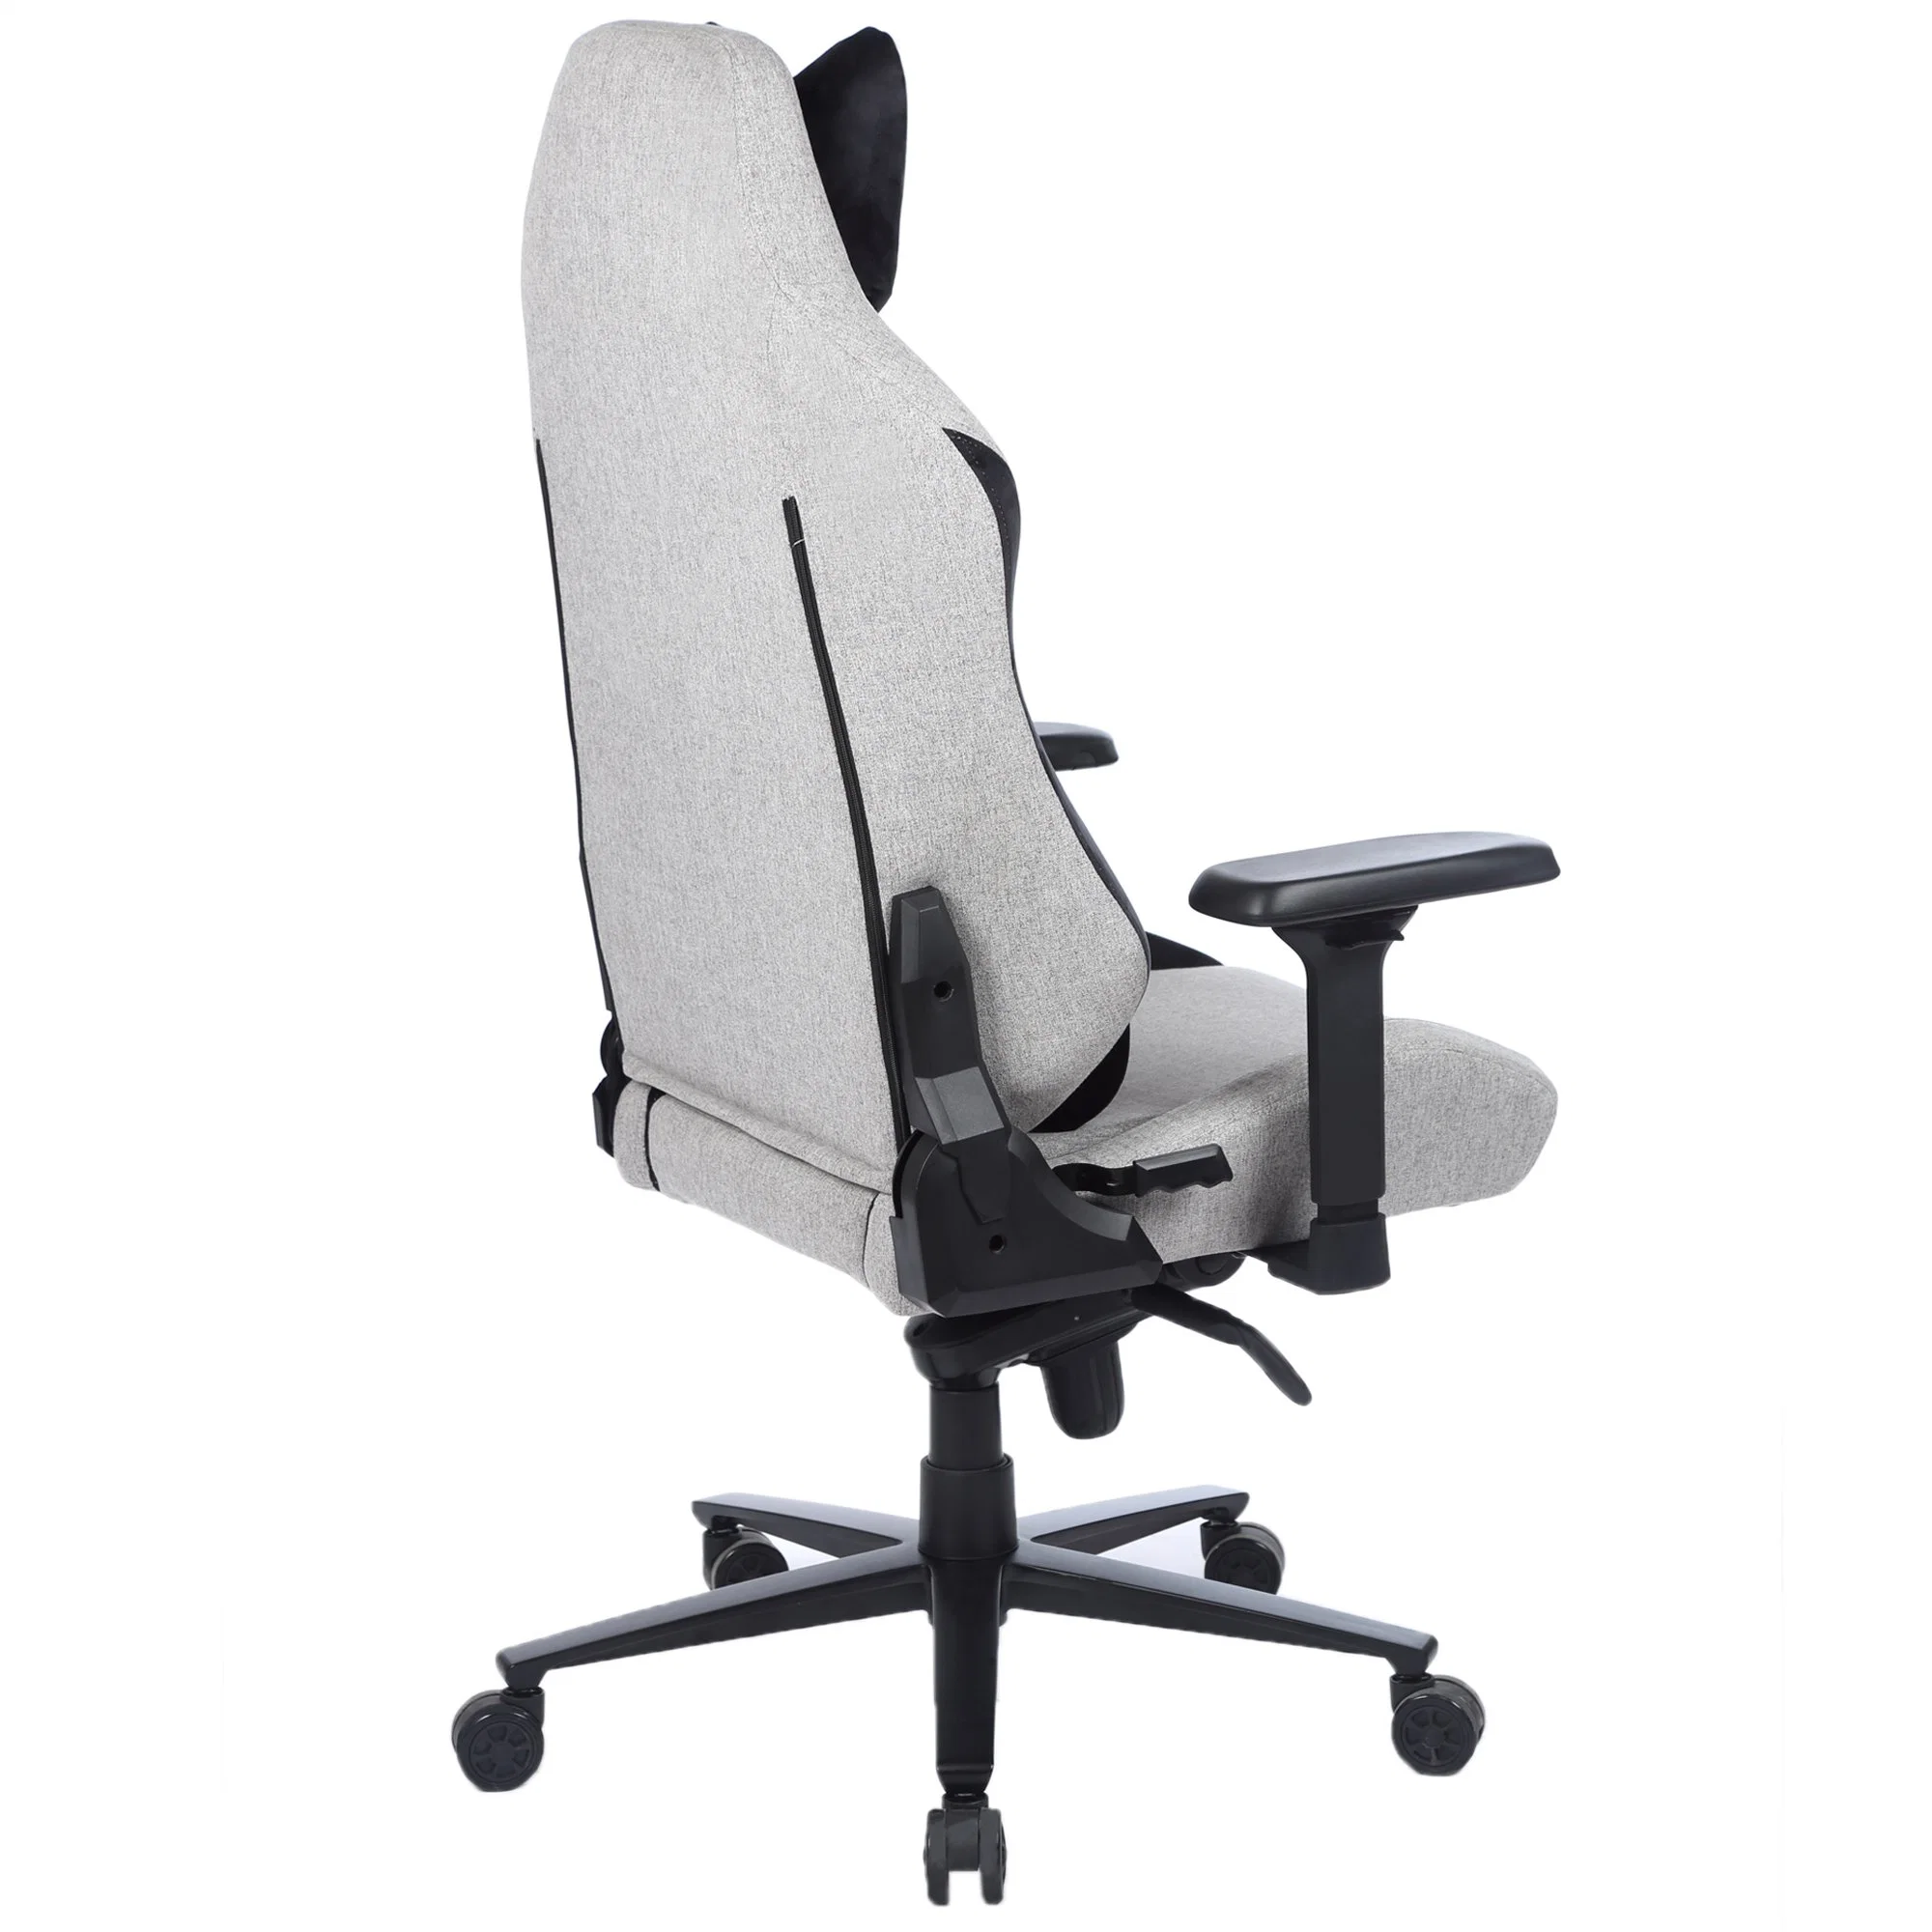 Chaise de jeu avec base en aluminium anti-corrosion Yuhang, chaise de jeu en tissu gris